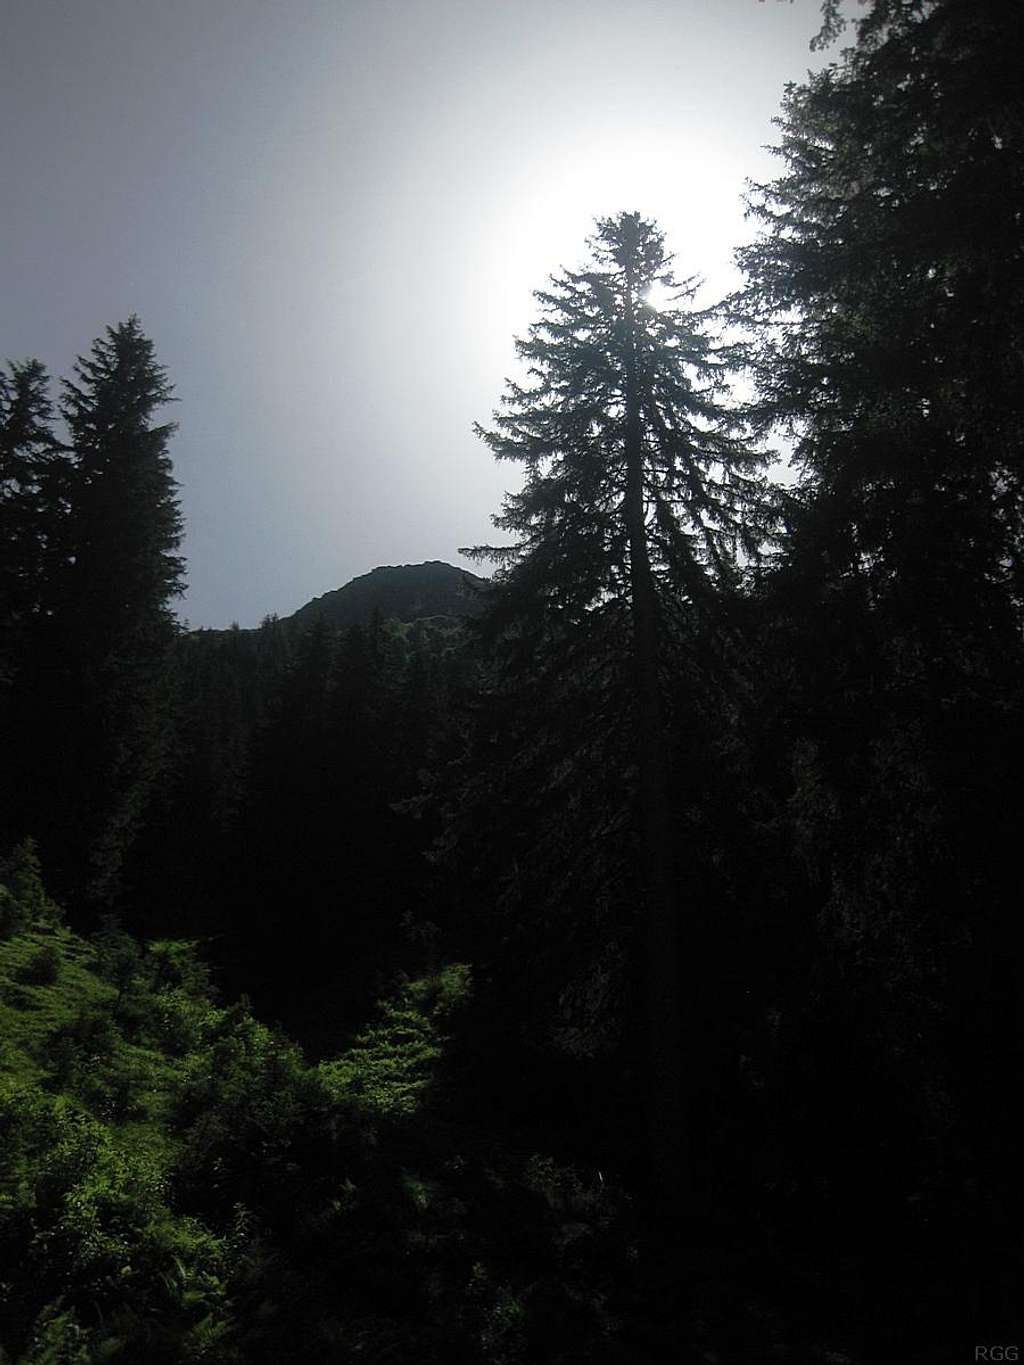 The dense forest at Trenkwald, Pitztal